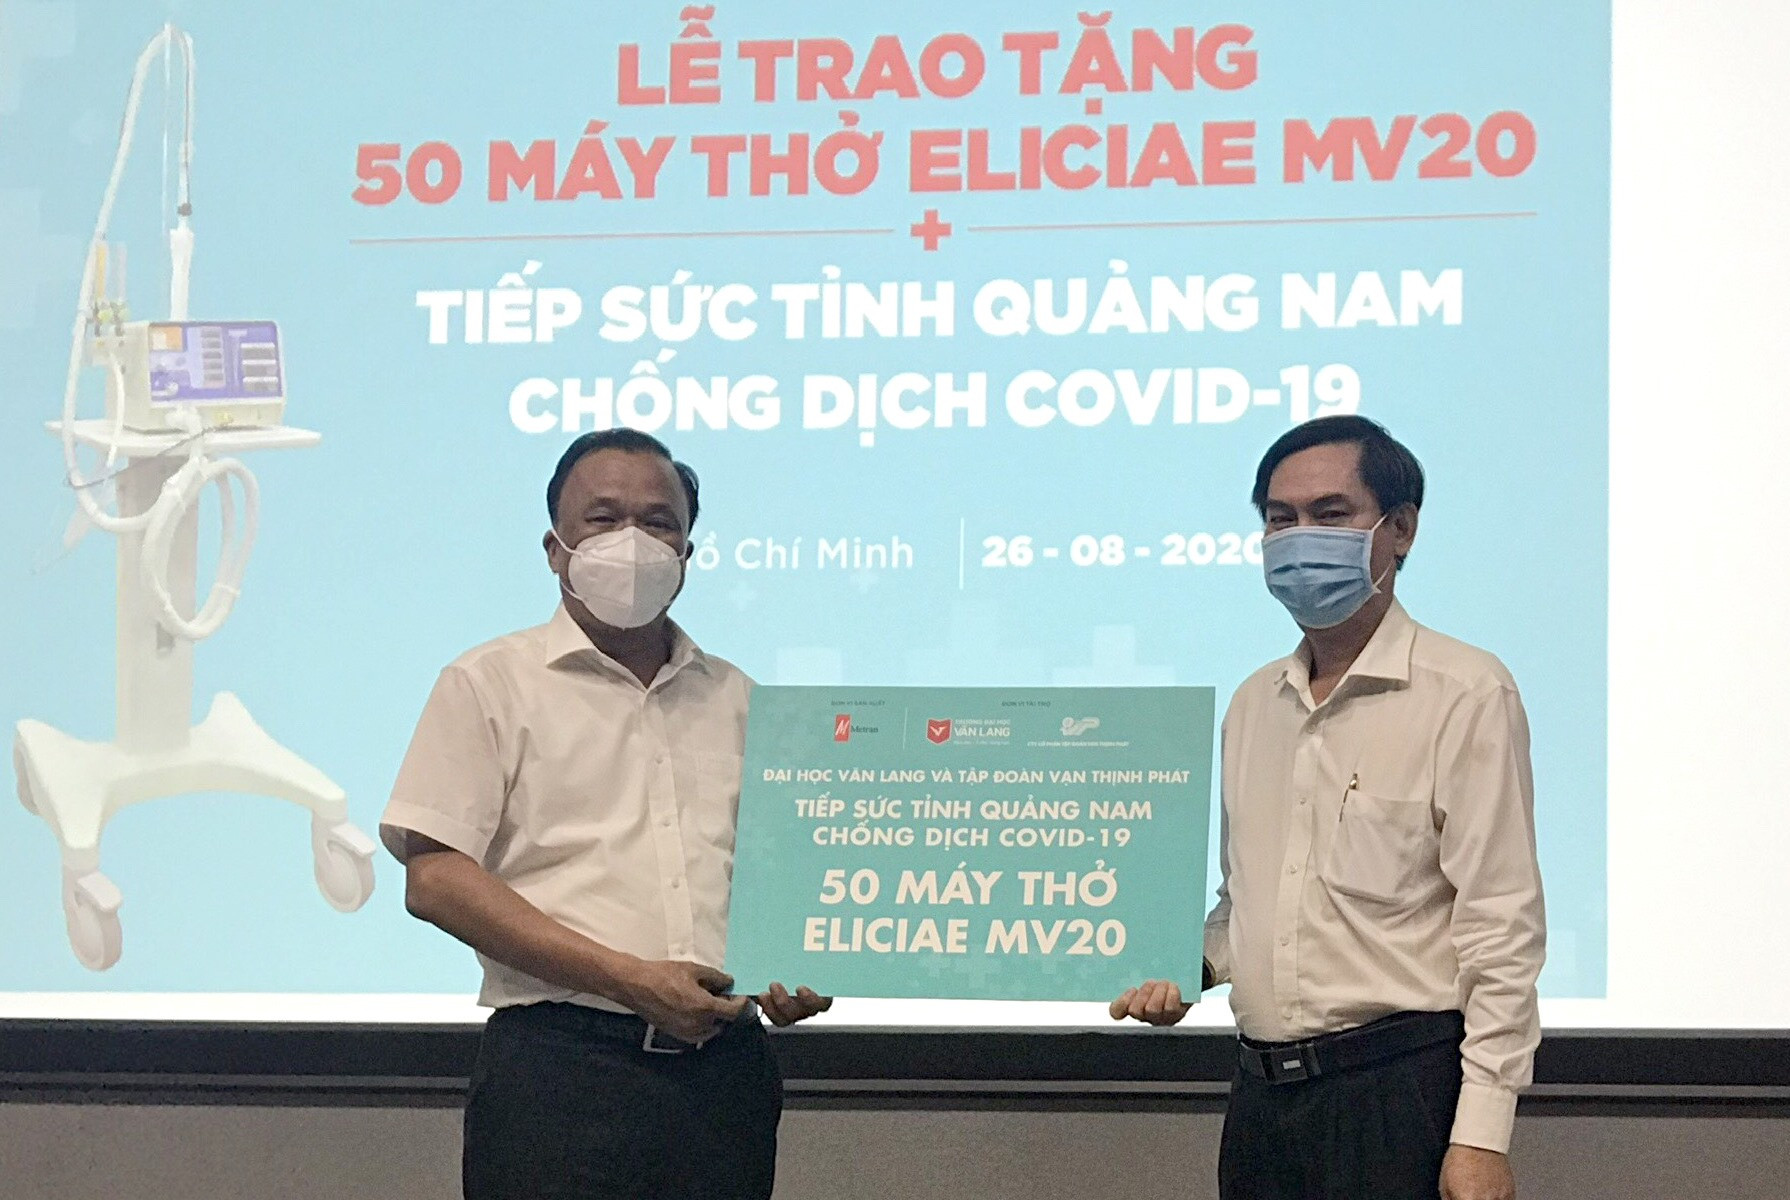 Ông Mai Văn Mười - Phó Giám đốc Sở Y tế (bên trái) tiếp nhận máy thở từ lãnh đạo Trường Đại học Văn Lang. Ảnh: THÙY AN